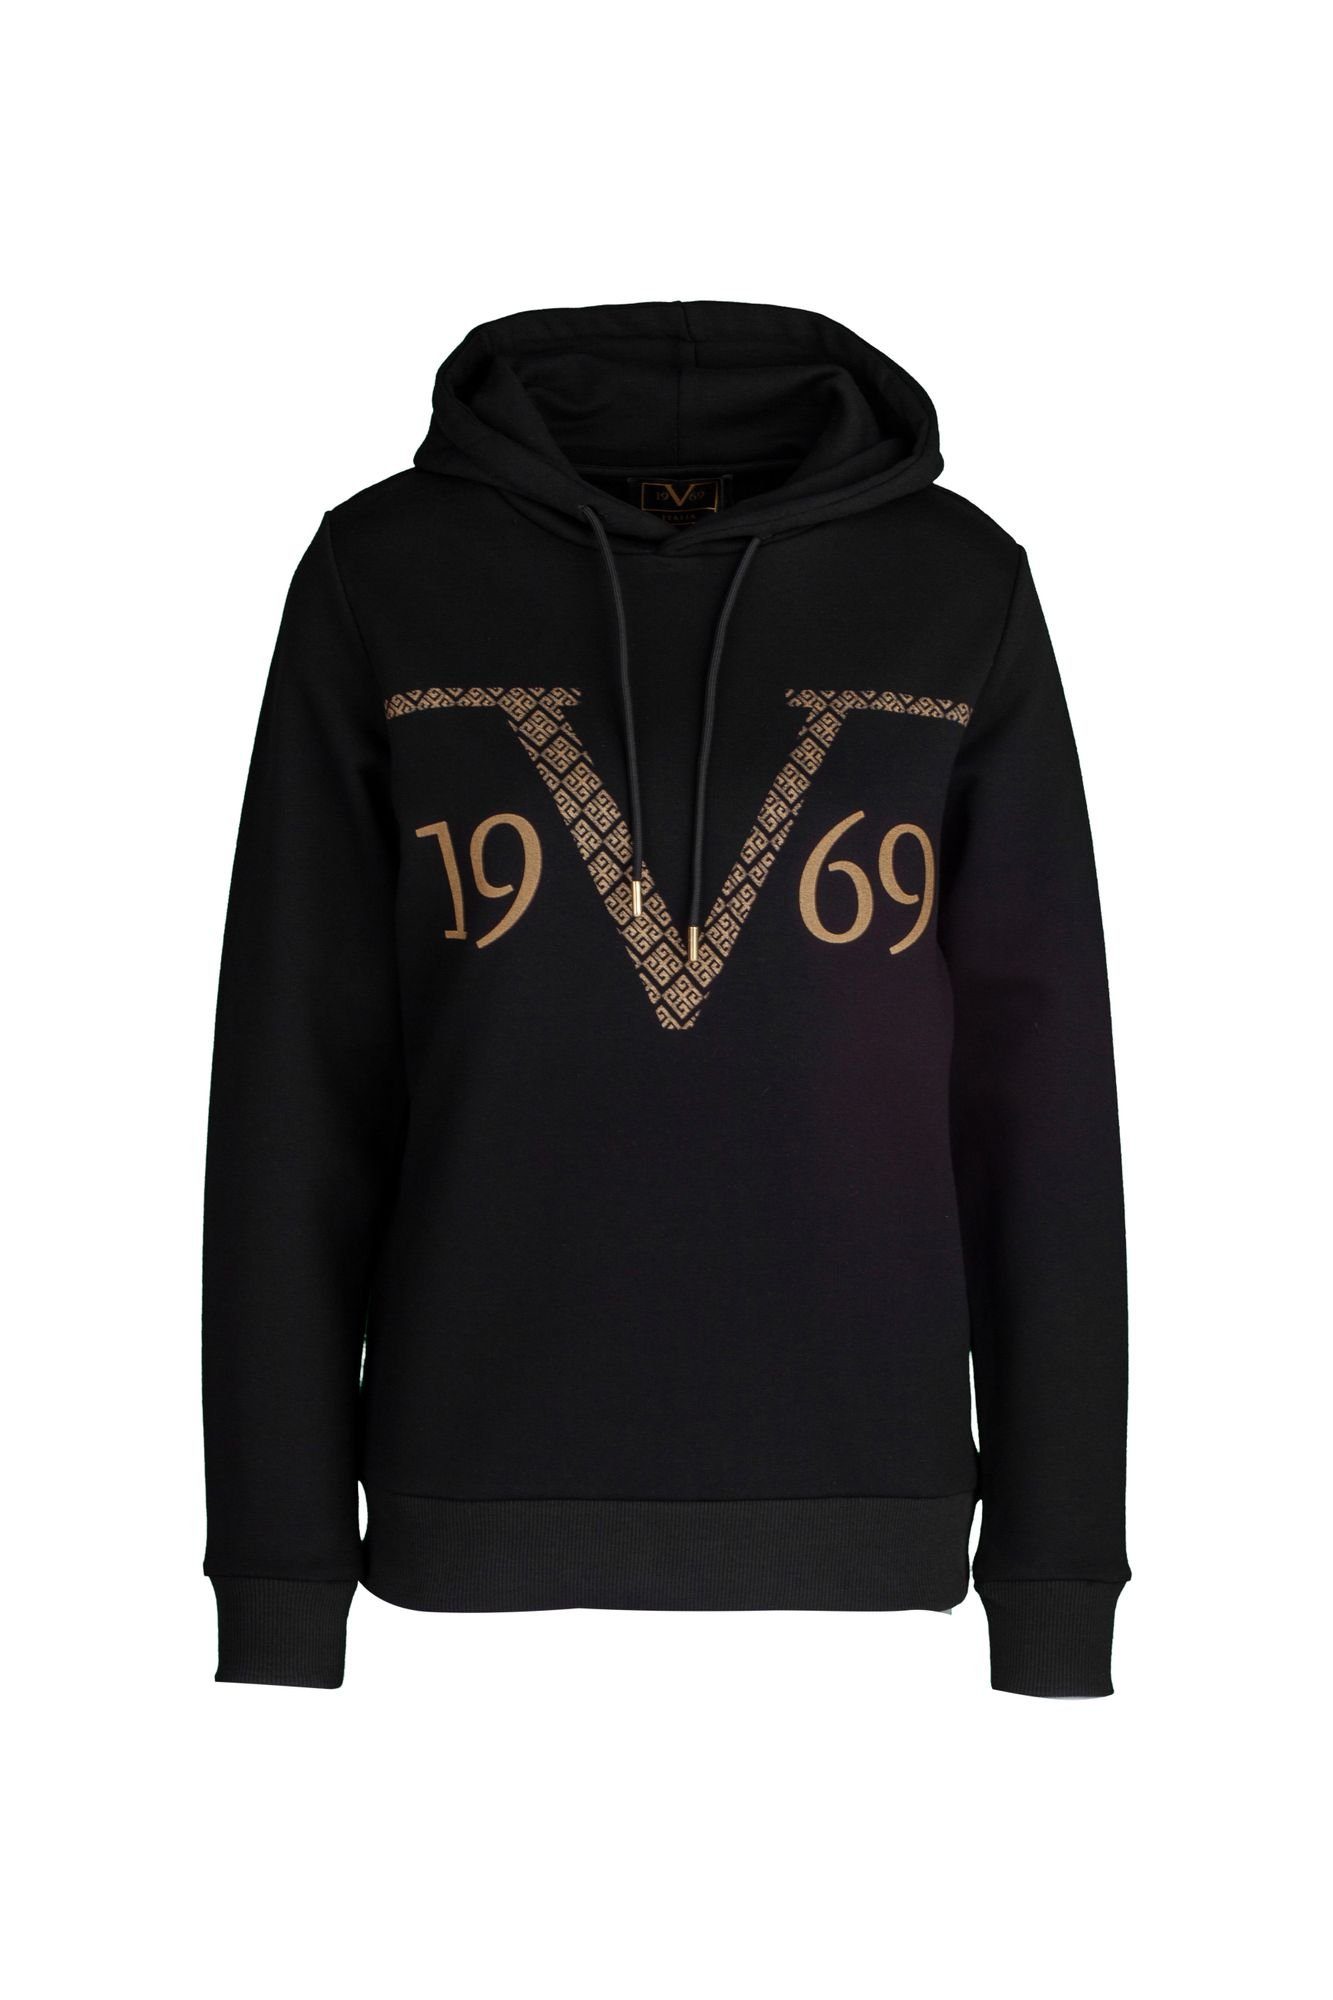 19V69 Italia by Versace Hoodie online kaufen | OTTO